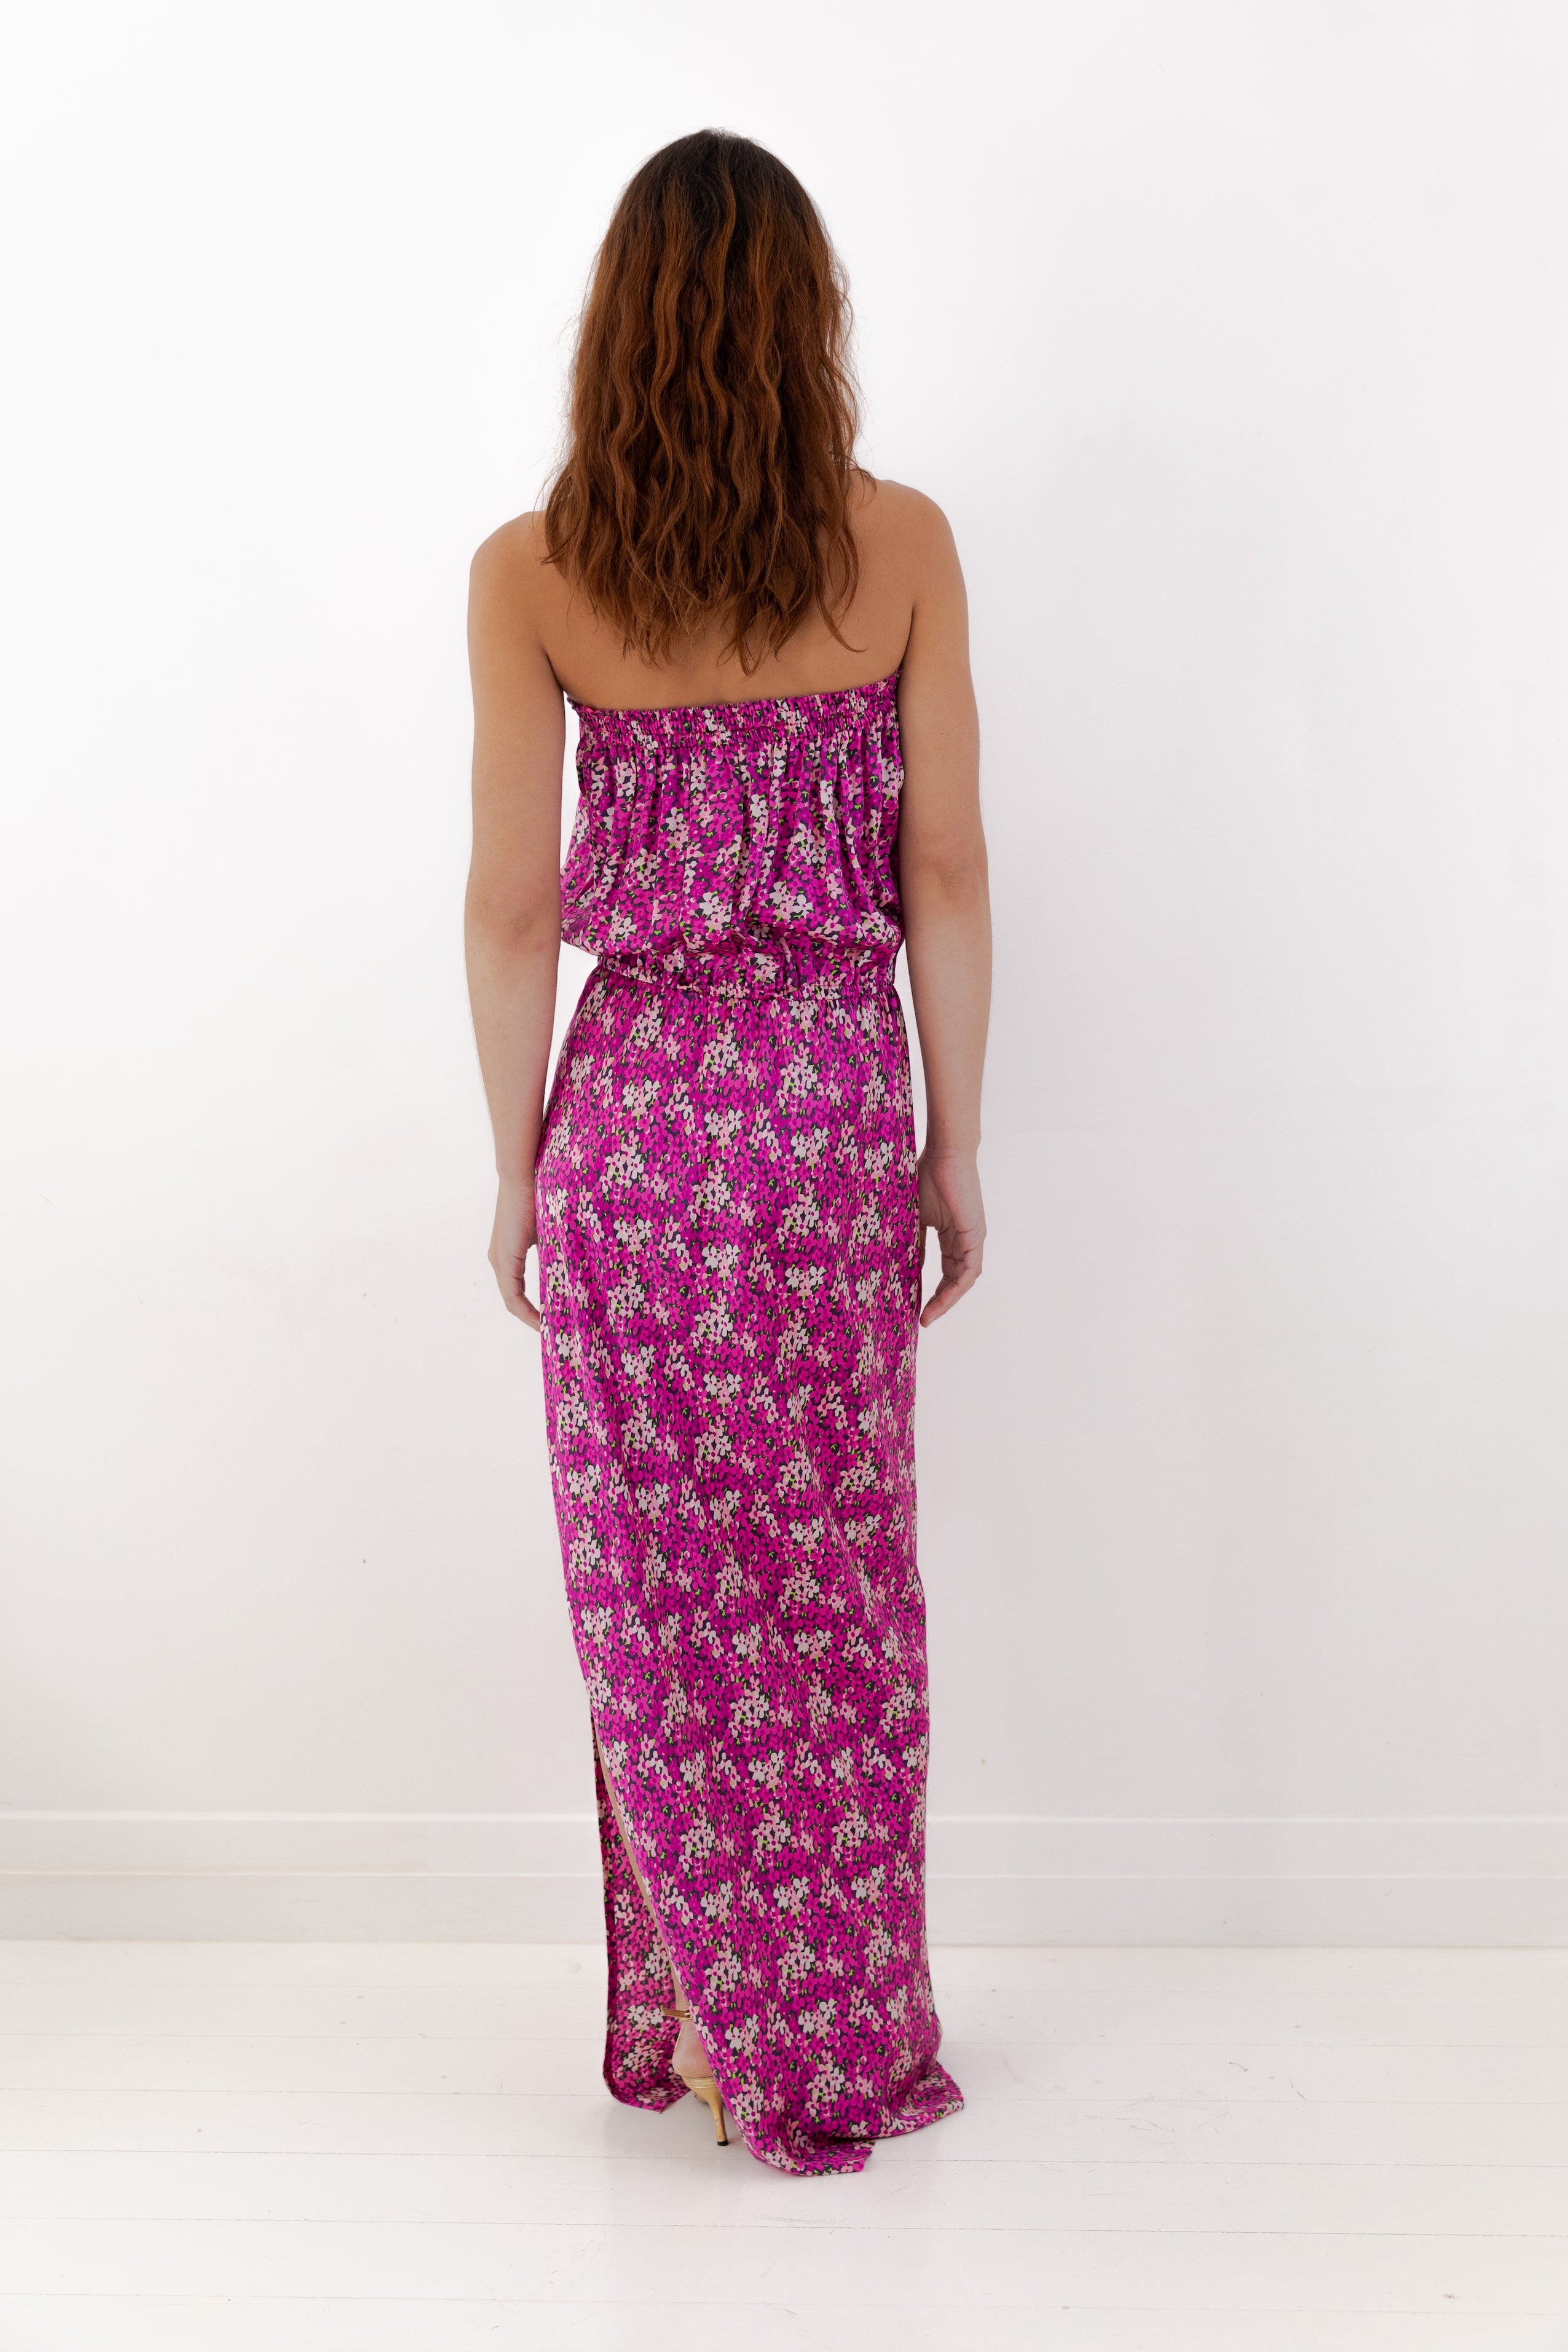 Lanvin <br> Resort 2010 strapless silk floral gown